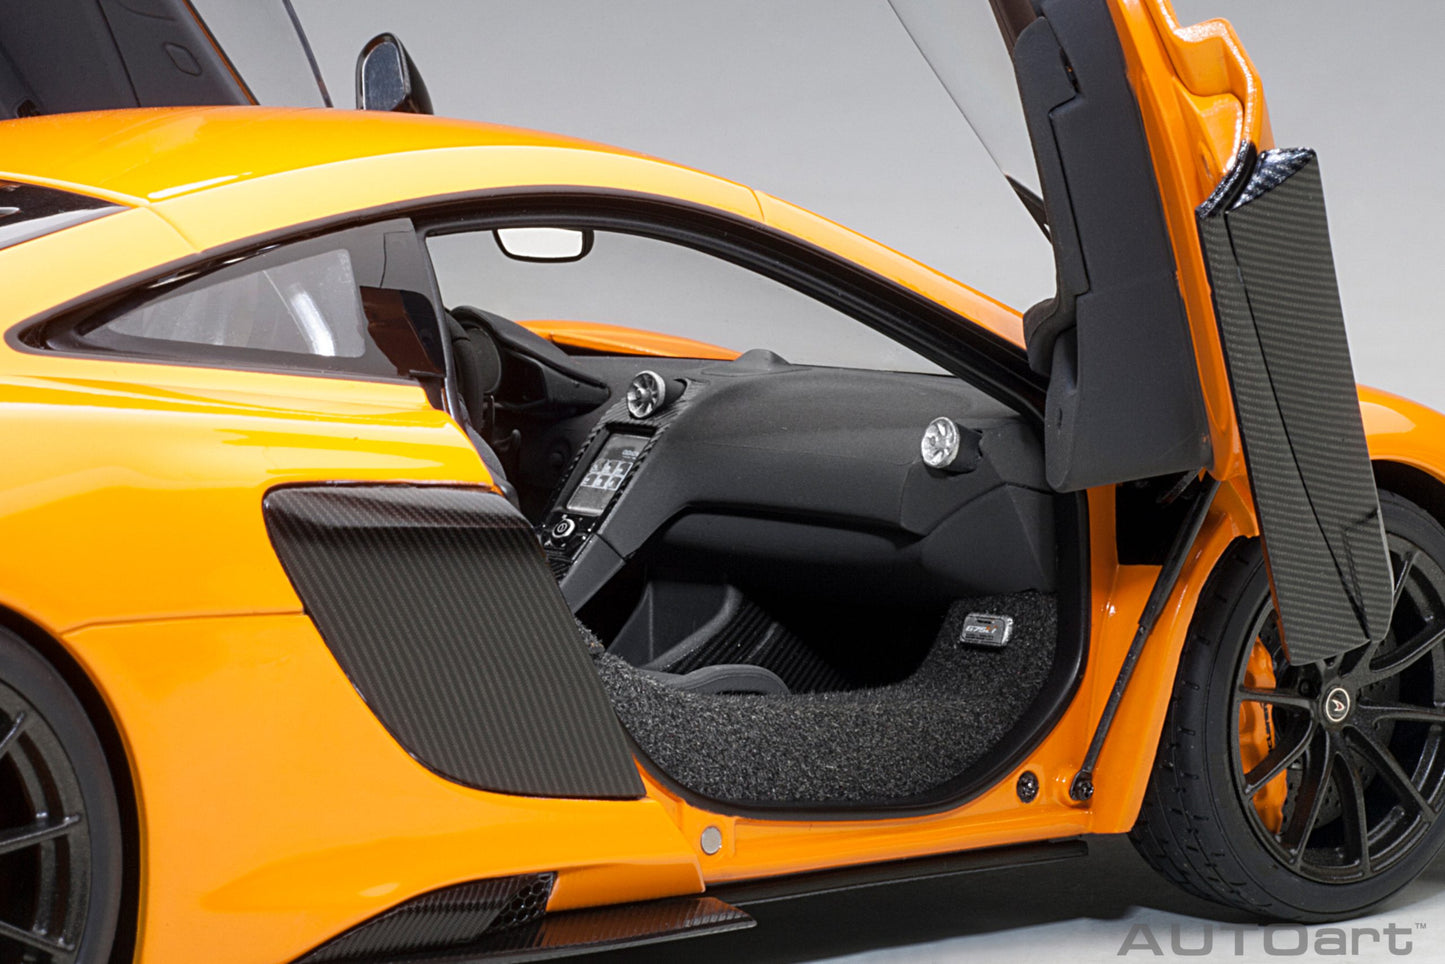 Macheta auto McLaren 675LT (2016) 1:18 AutoArt